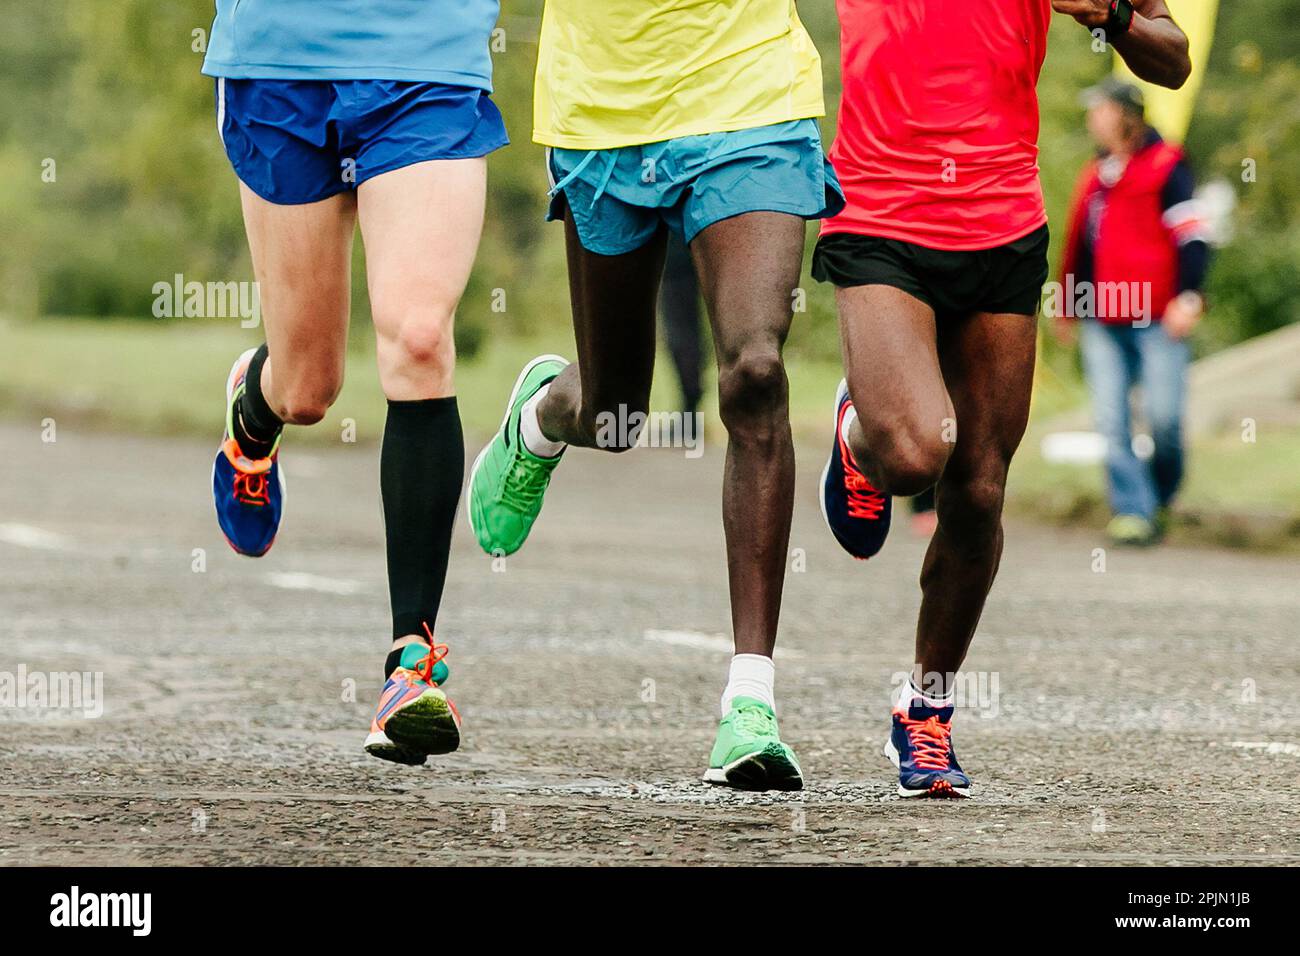 Zwei afrikanische und europäische Läufer laufen Marathon und zeigen die Beine von vorne. Jogger laufen Weltmeisterschaftsrennen Stockfoto